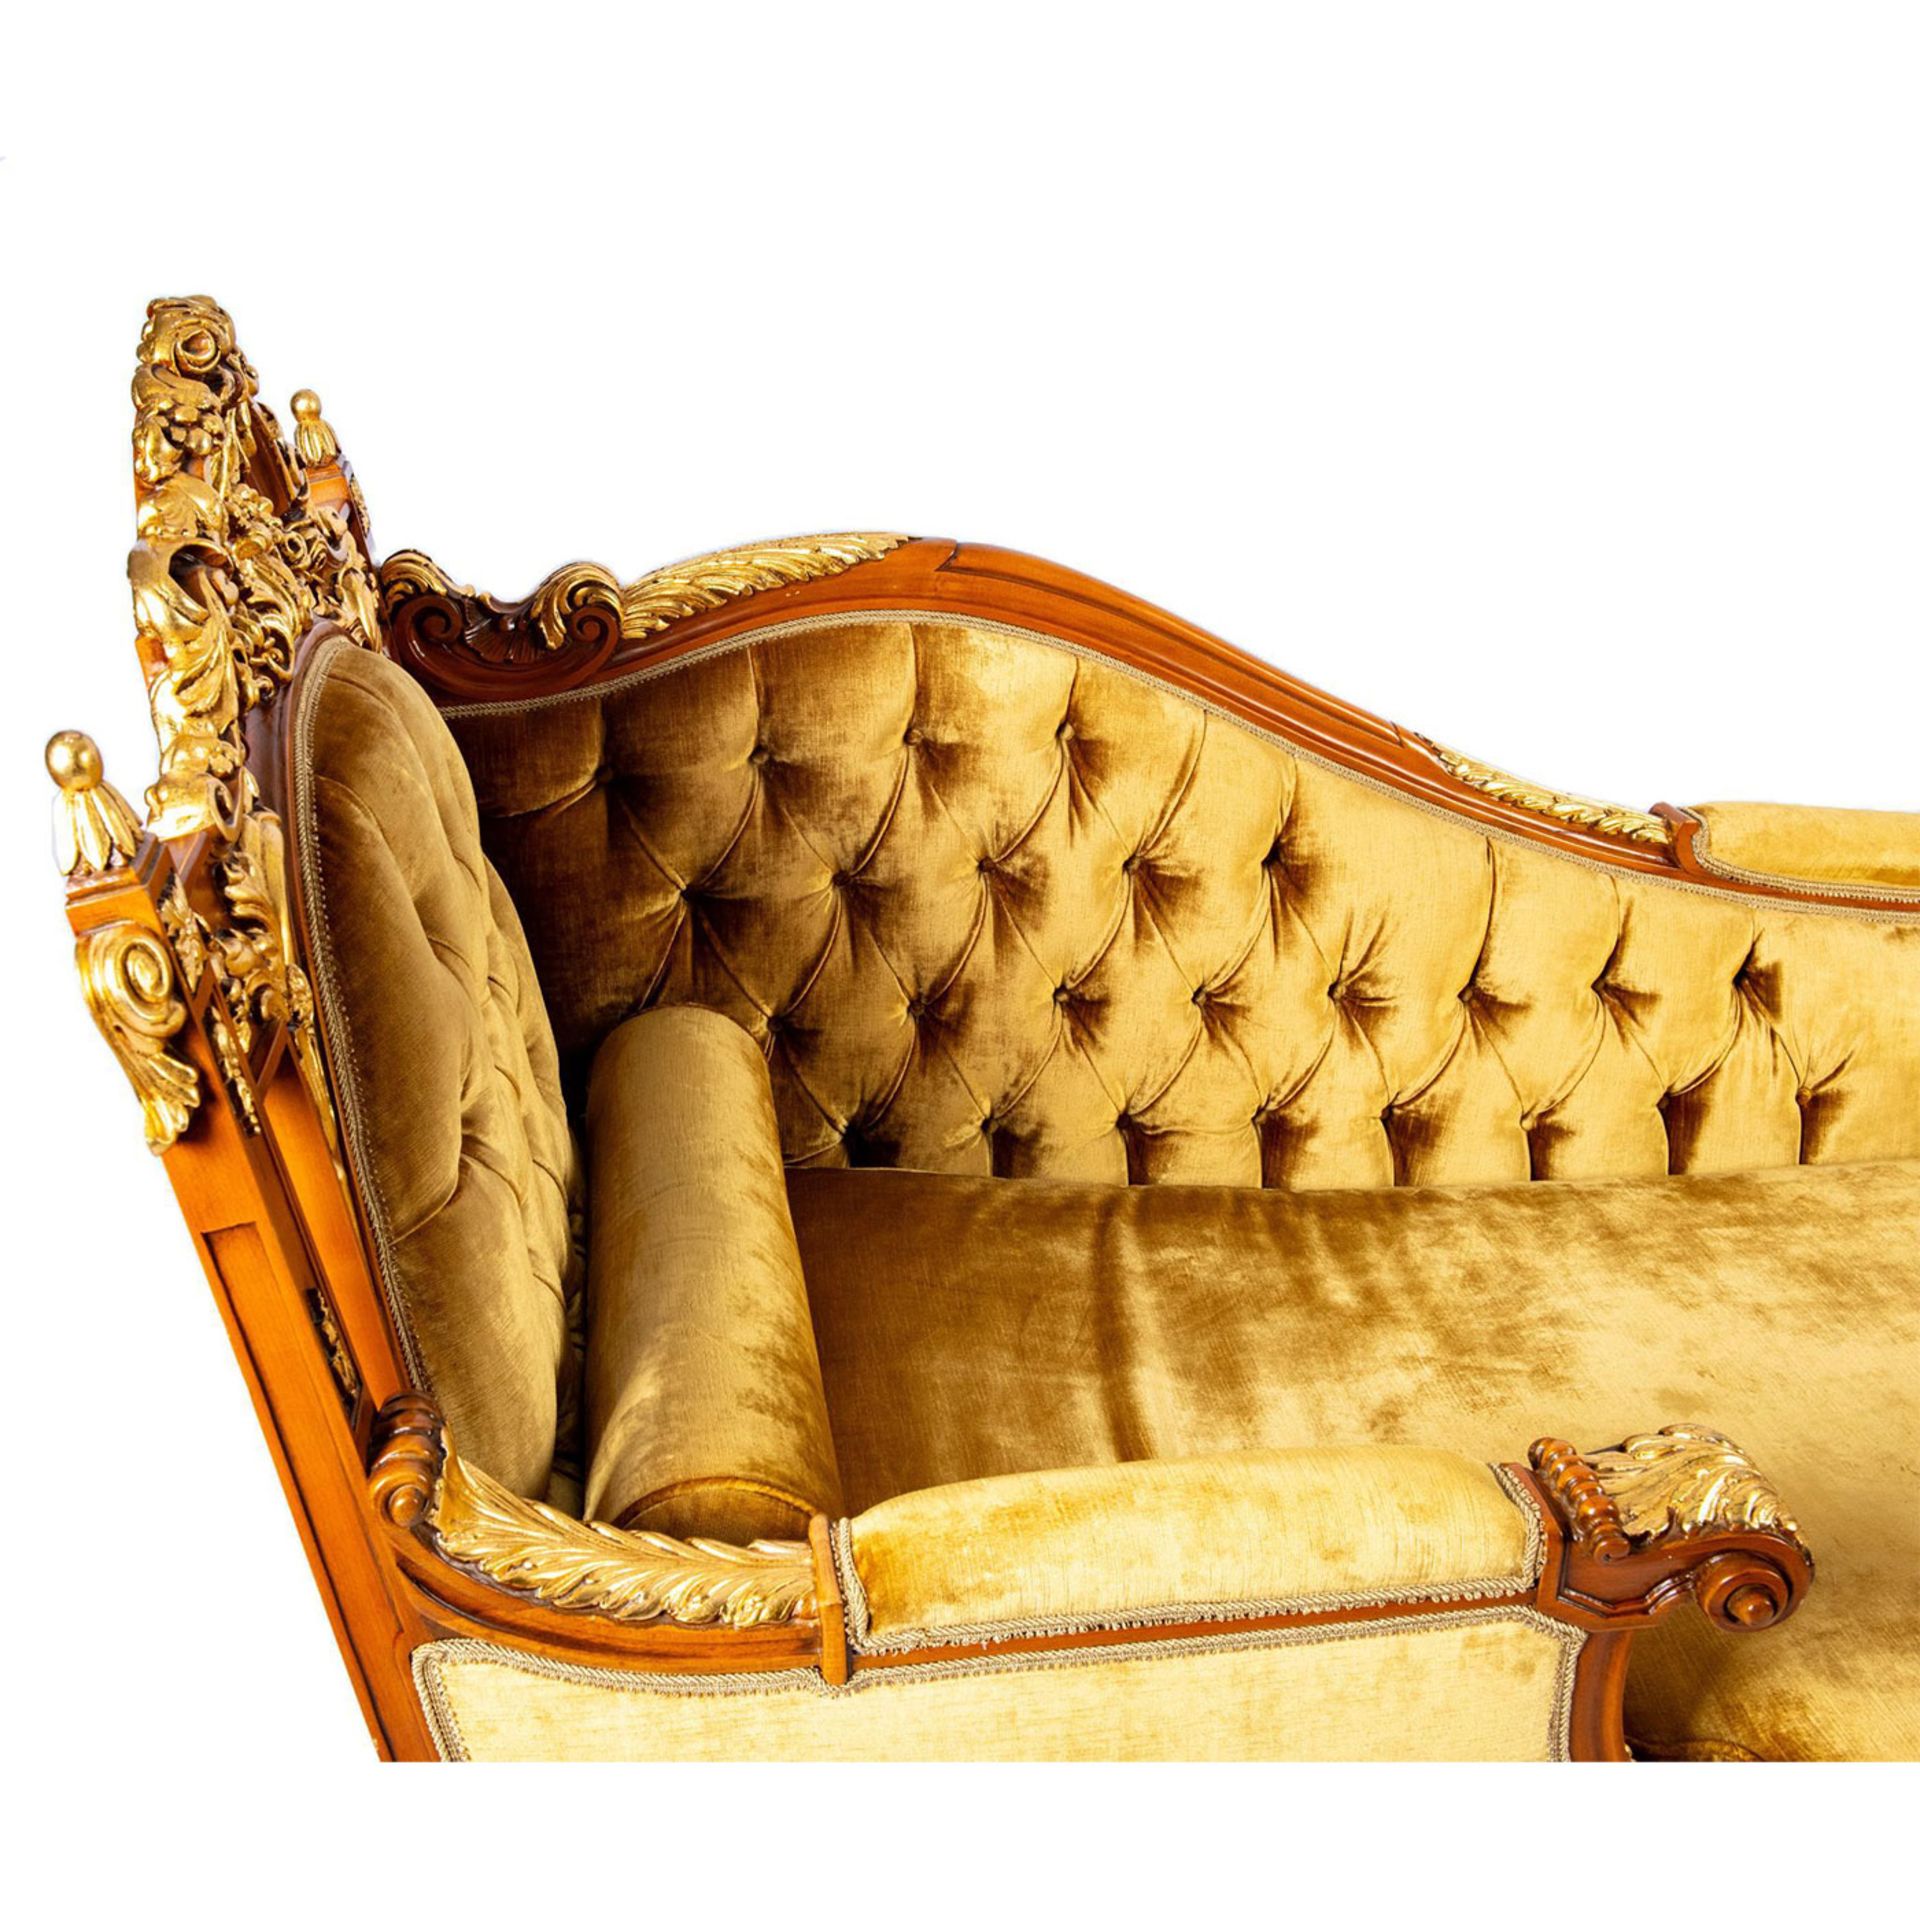 Lavish Baroque Style Chaise Lounge Sofa - Image 2 of 5